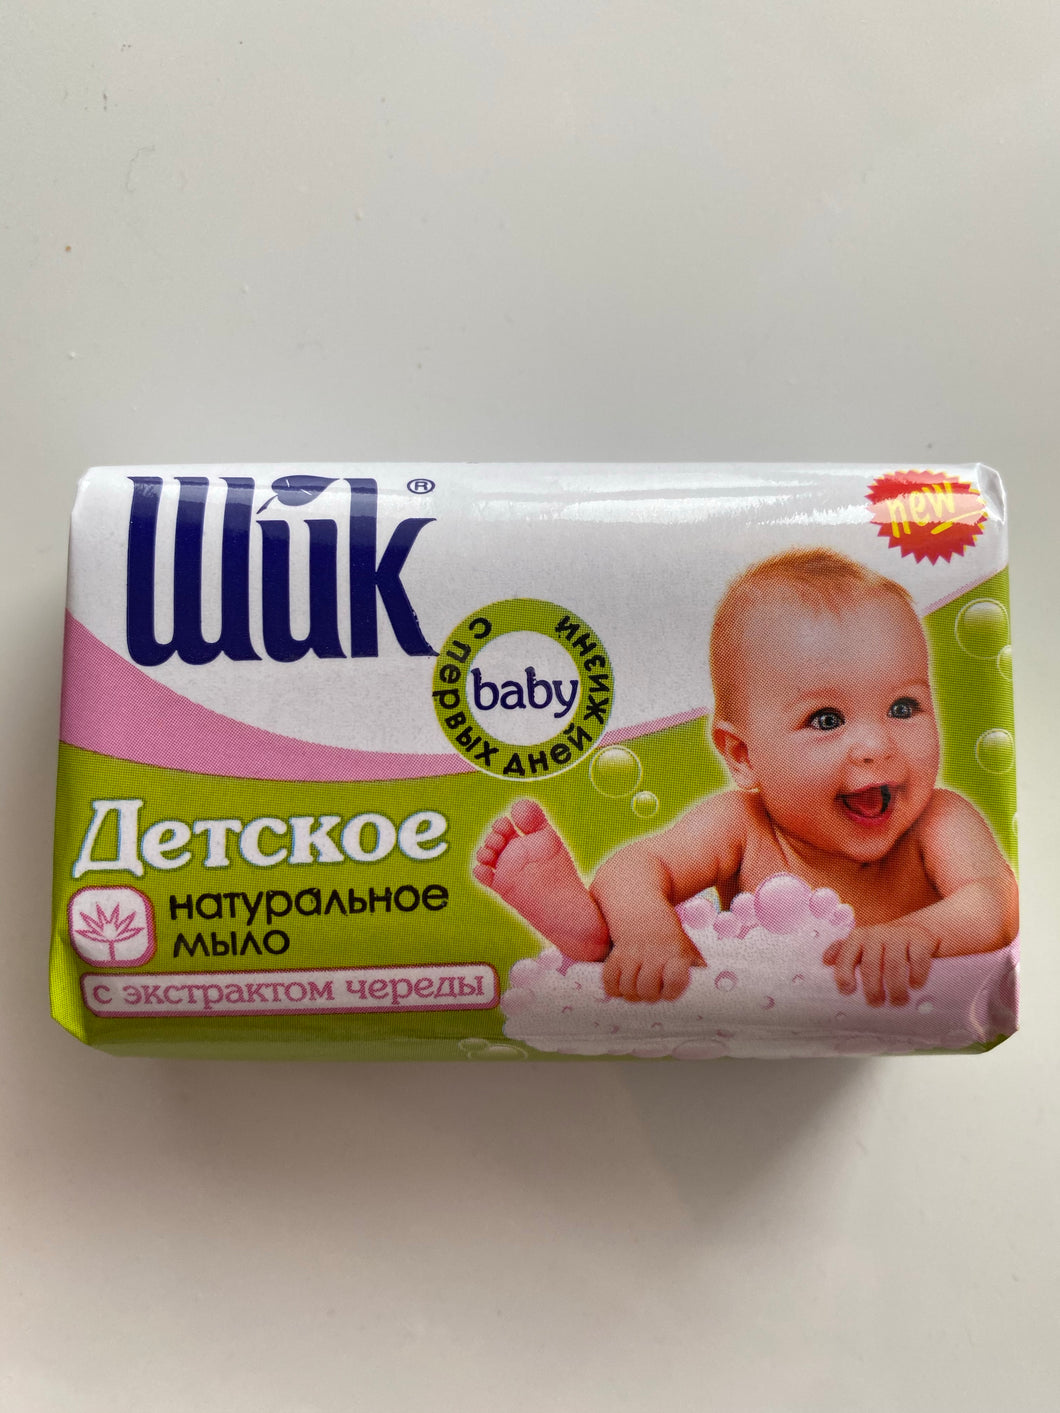 SHICK Baby natural soap 70g Ukraine Детское мыло натуральное с чередой и алое